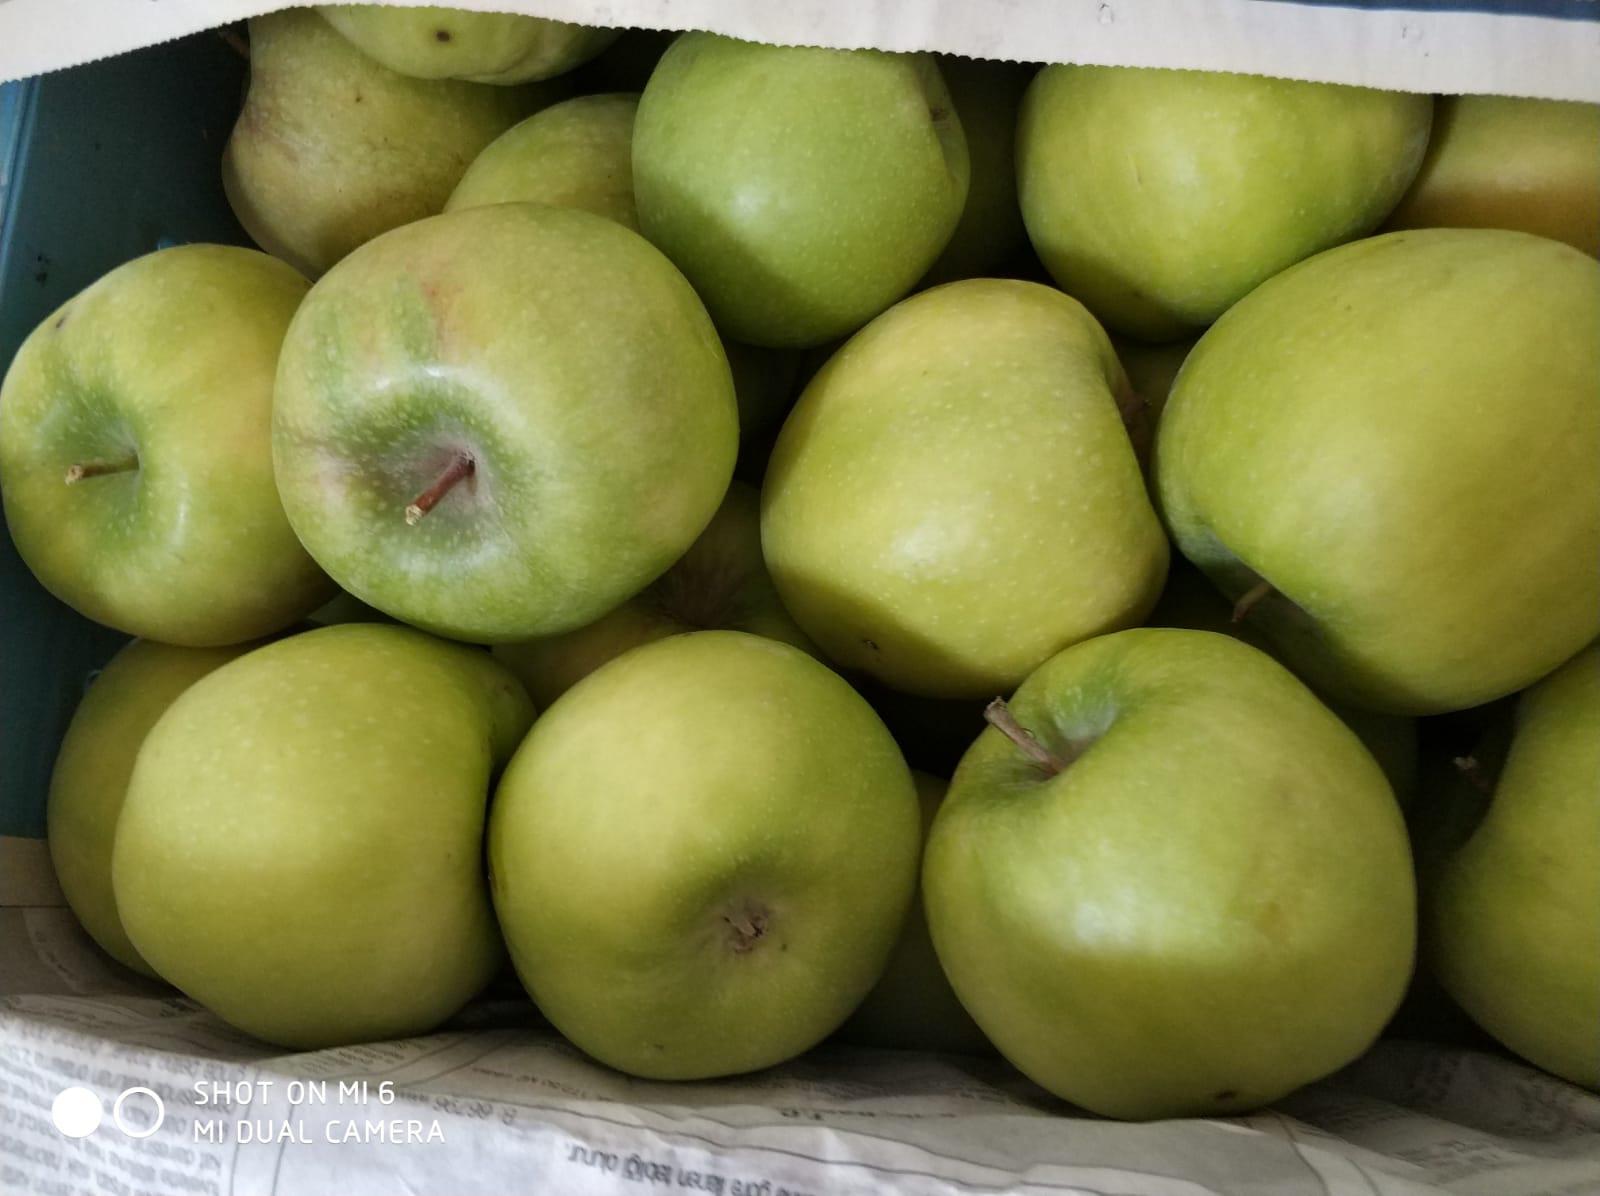 Elma - Evrim Evrim tarafından verilen satılık granny smith çeşidi elma  ilanını ve diğer satılık elma ilanlarını tarimziraat.com adresinde bulabilirsiniz